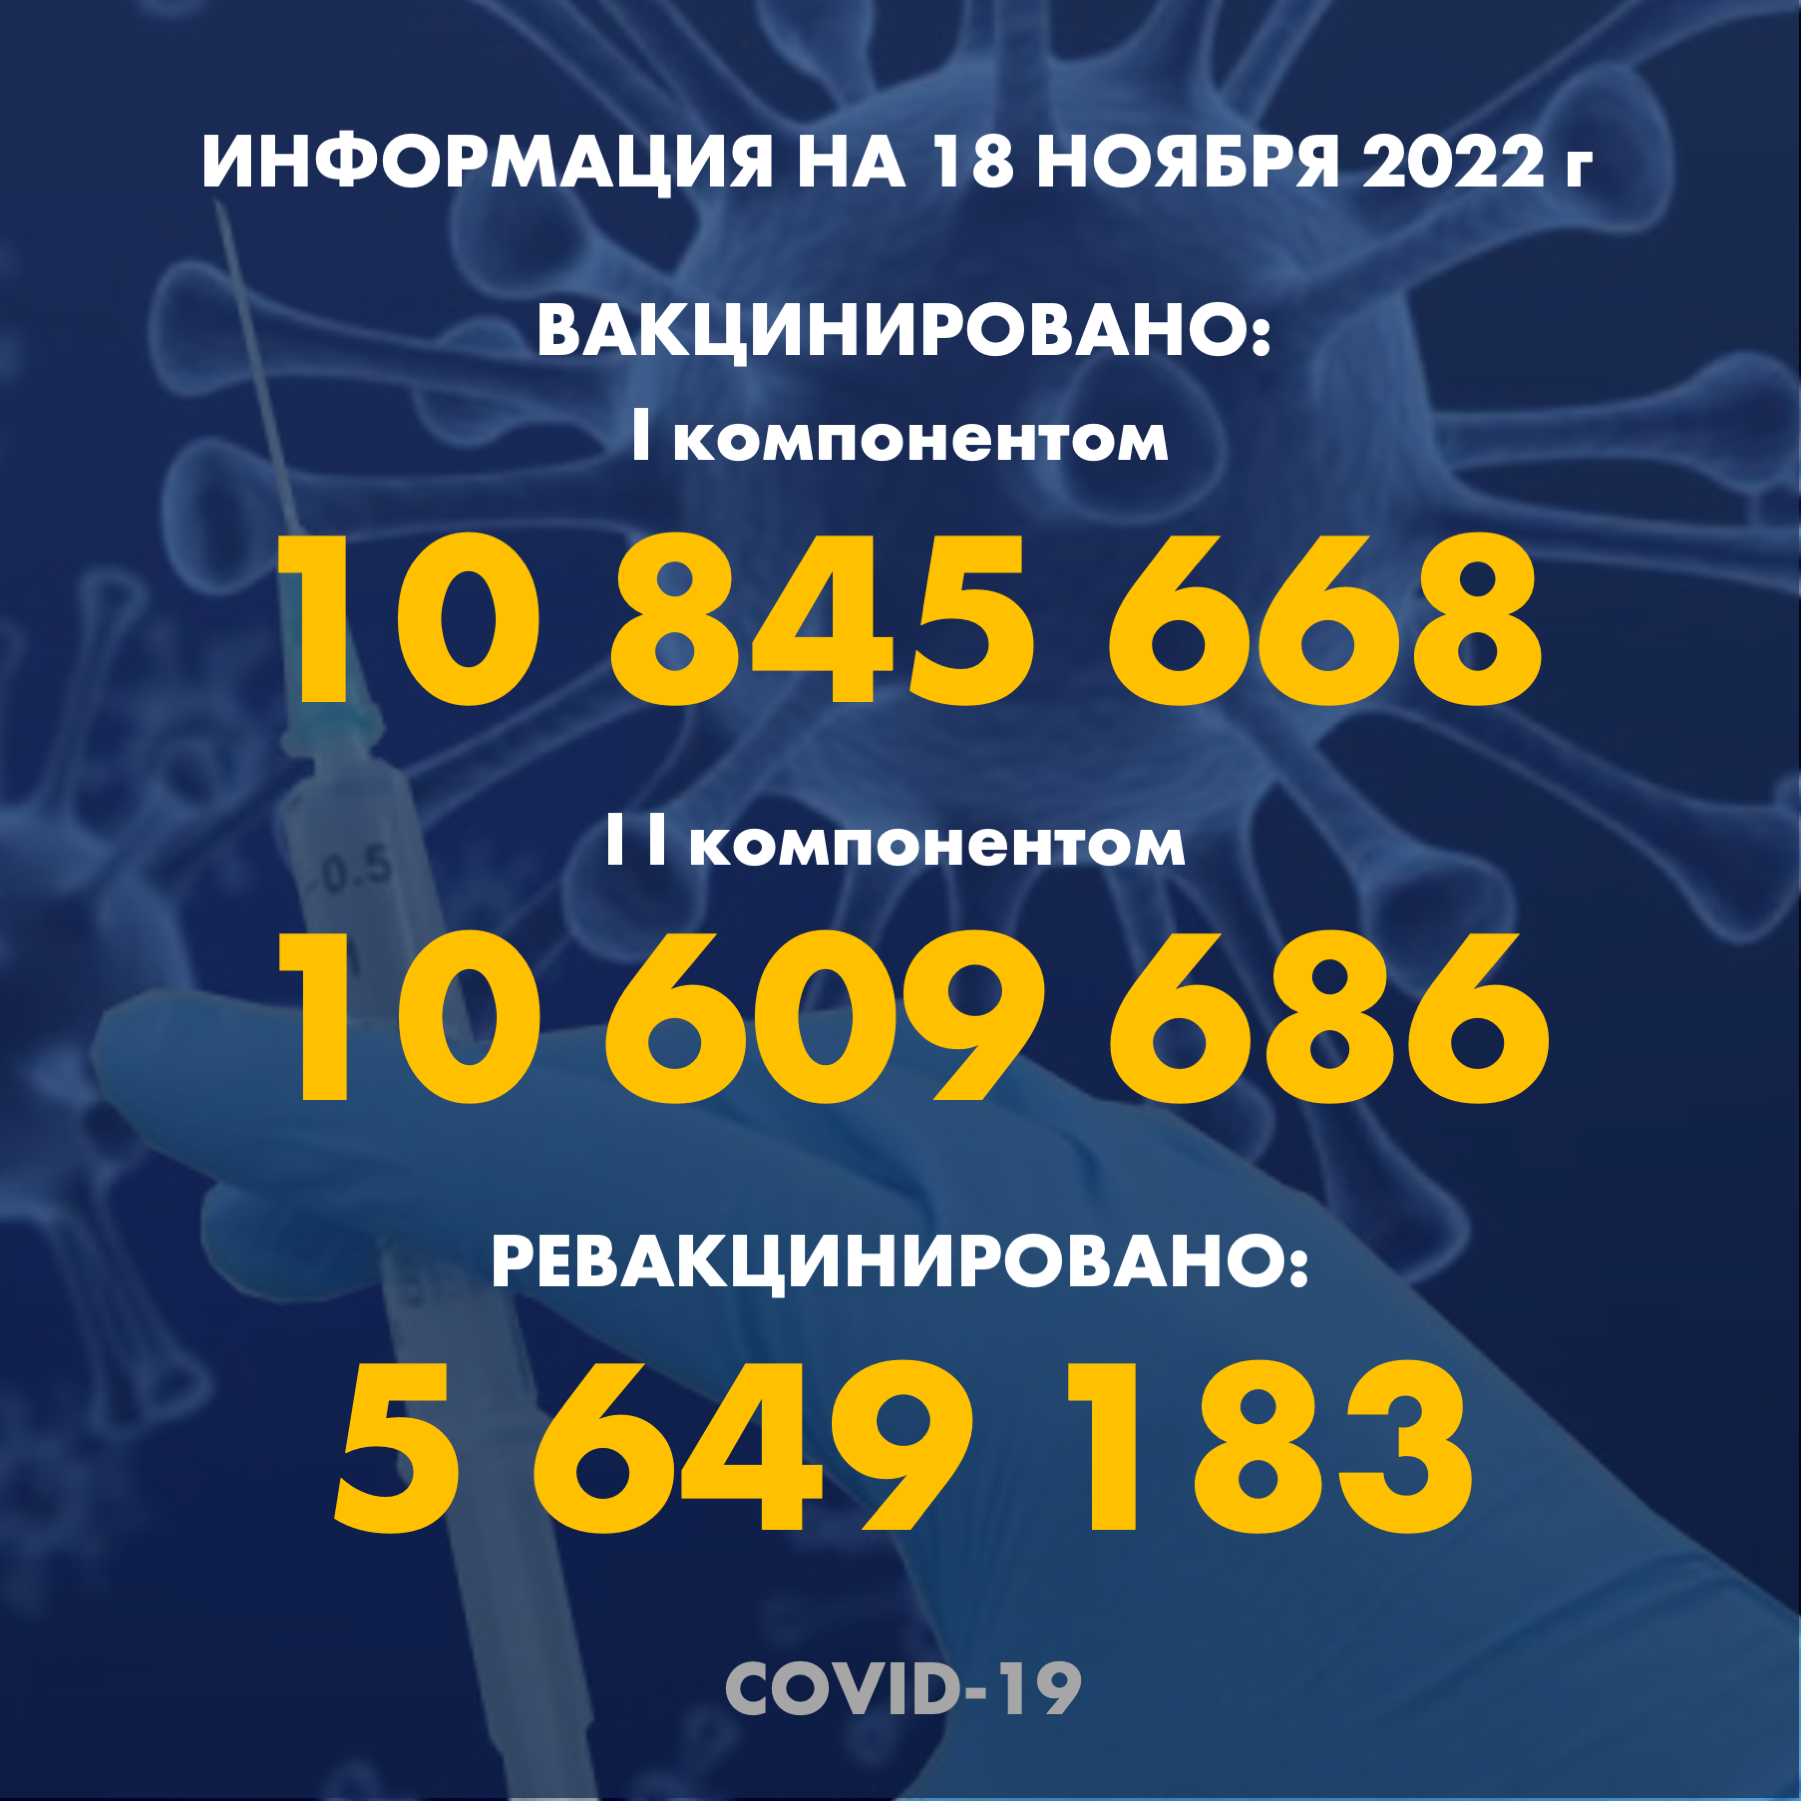 I компонентом 10 845 668 человек провакцинировано в Казахстане на 18.11.2022 г, II компонентом 10 609 686 человек. Ревакцинировано – 5 649 183